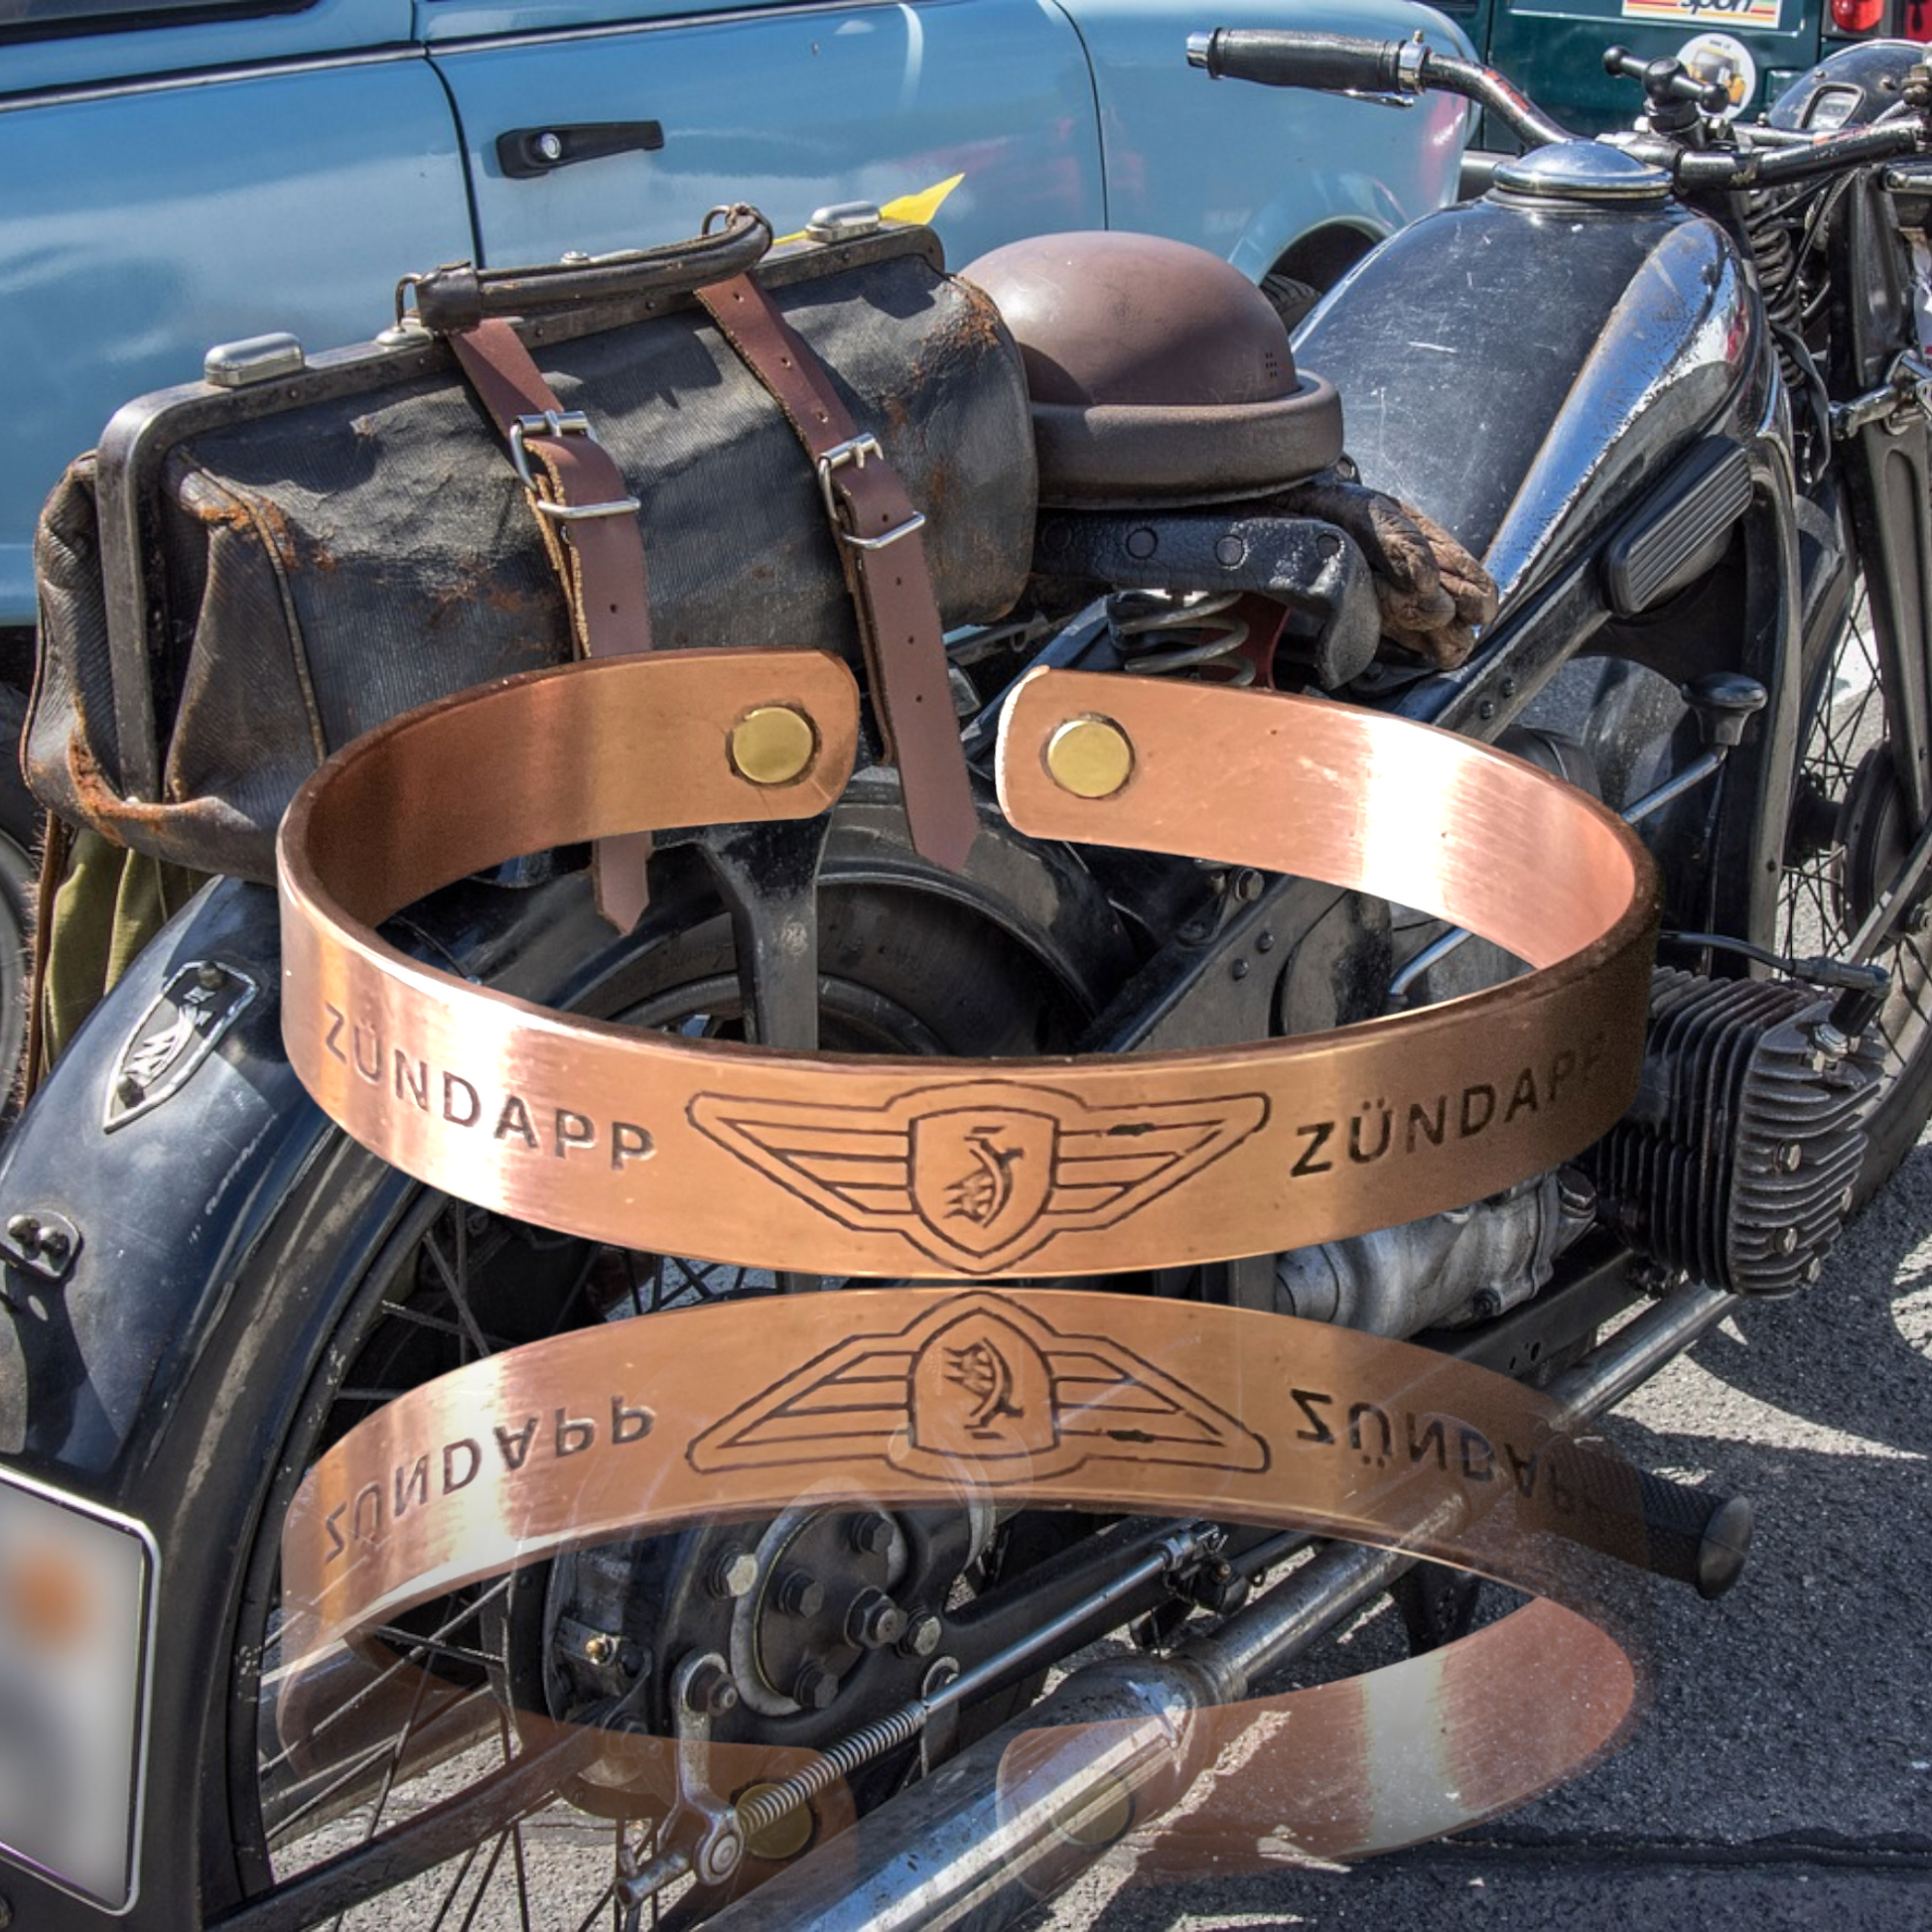 Custom design 100% copper health bracelet